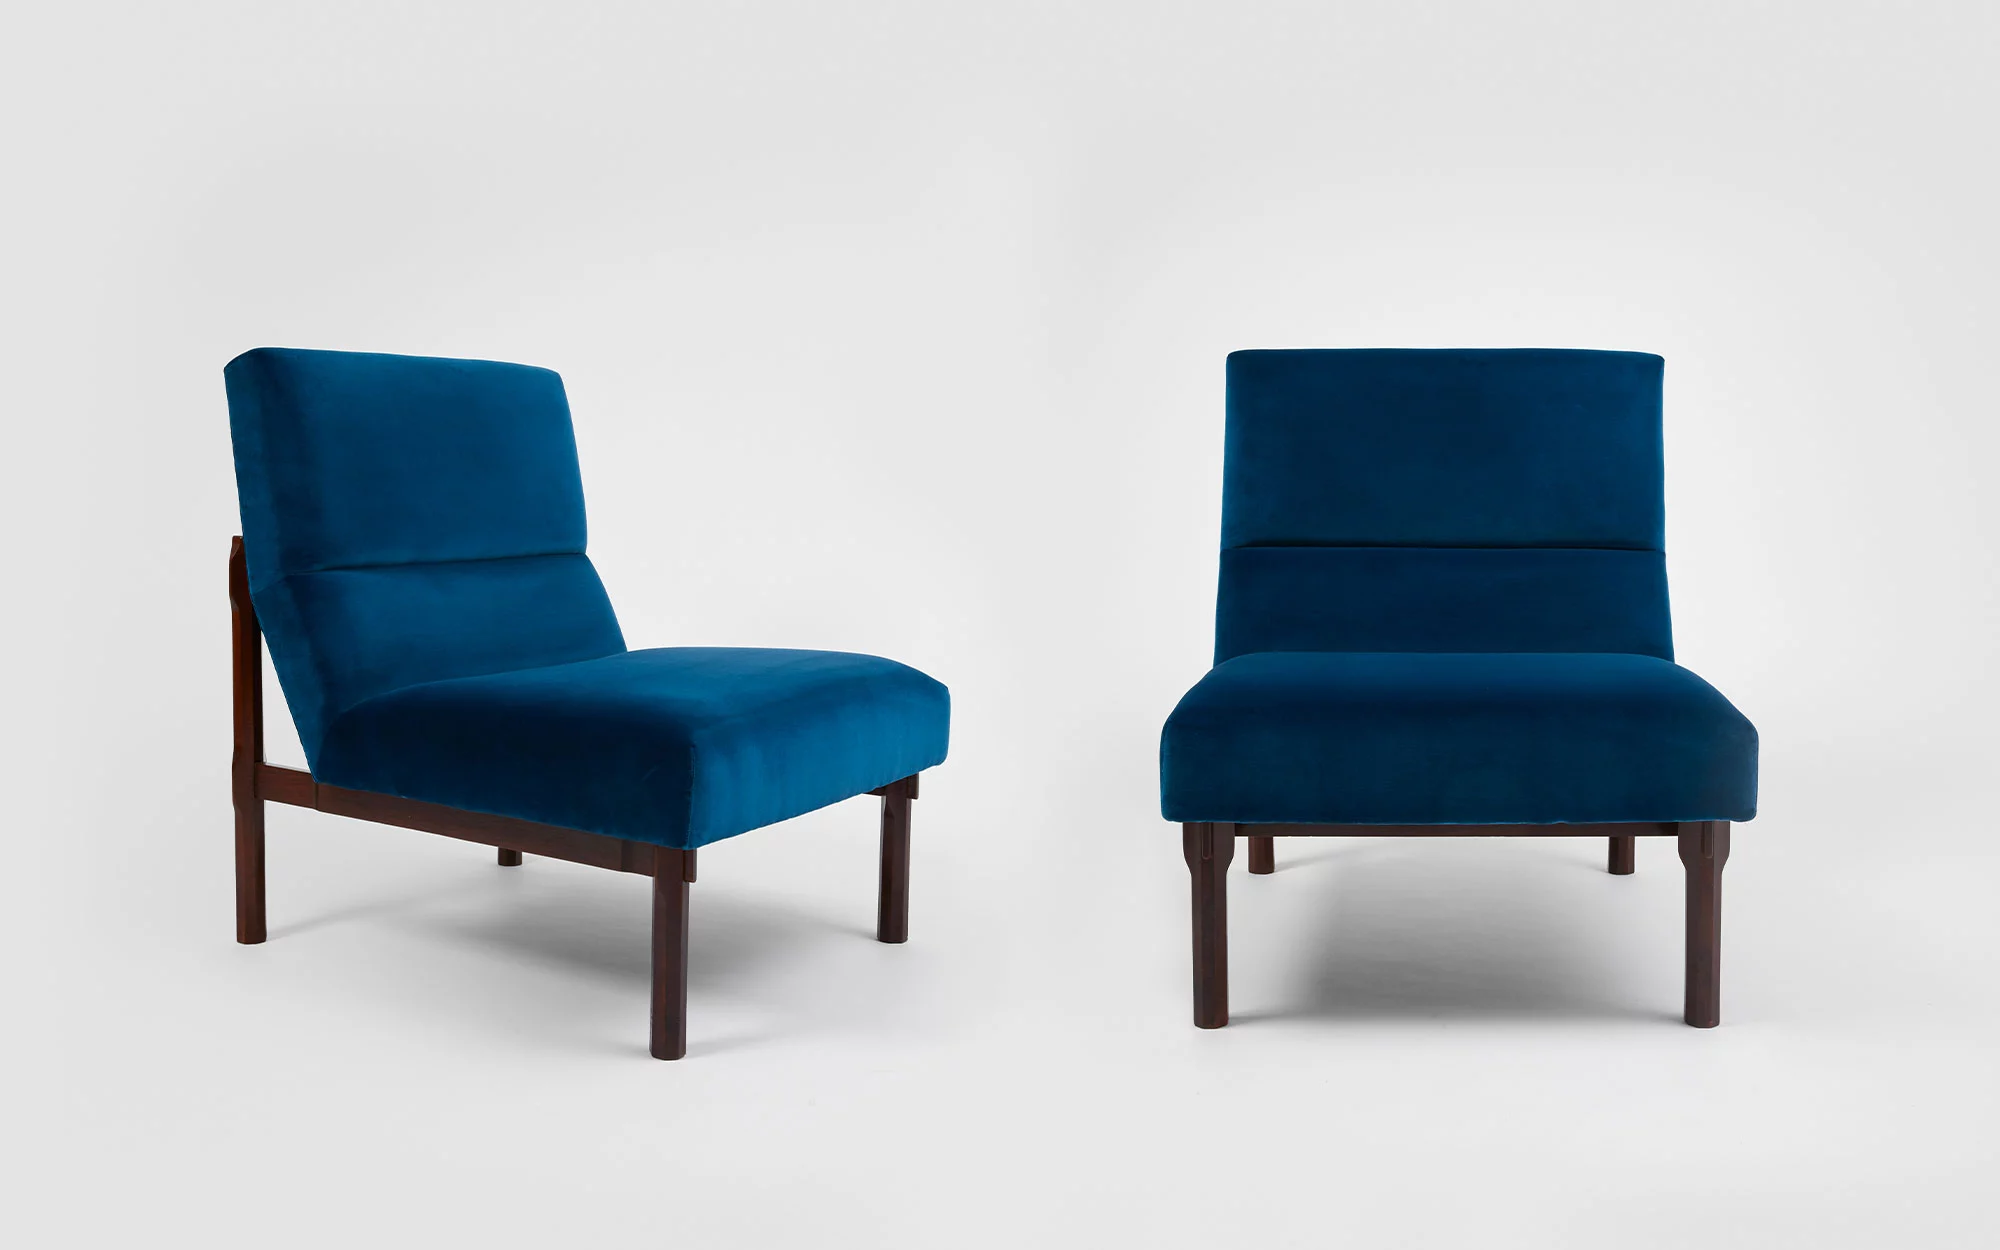 Armchair model n°869 - Ico & Luisa Parisi  - Seating - Galerie kreo